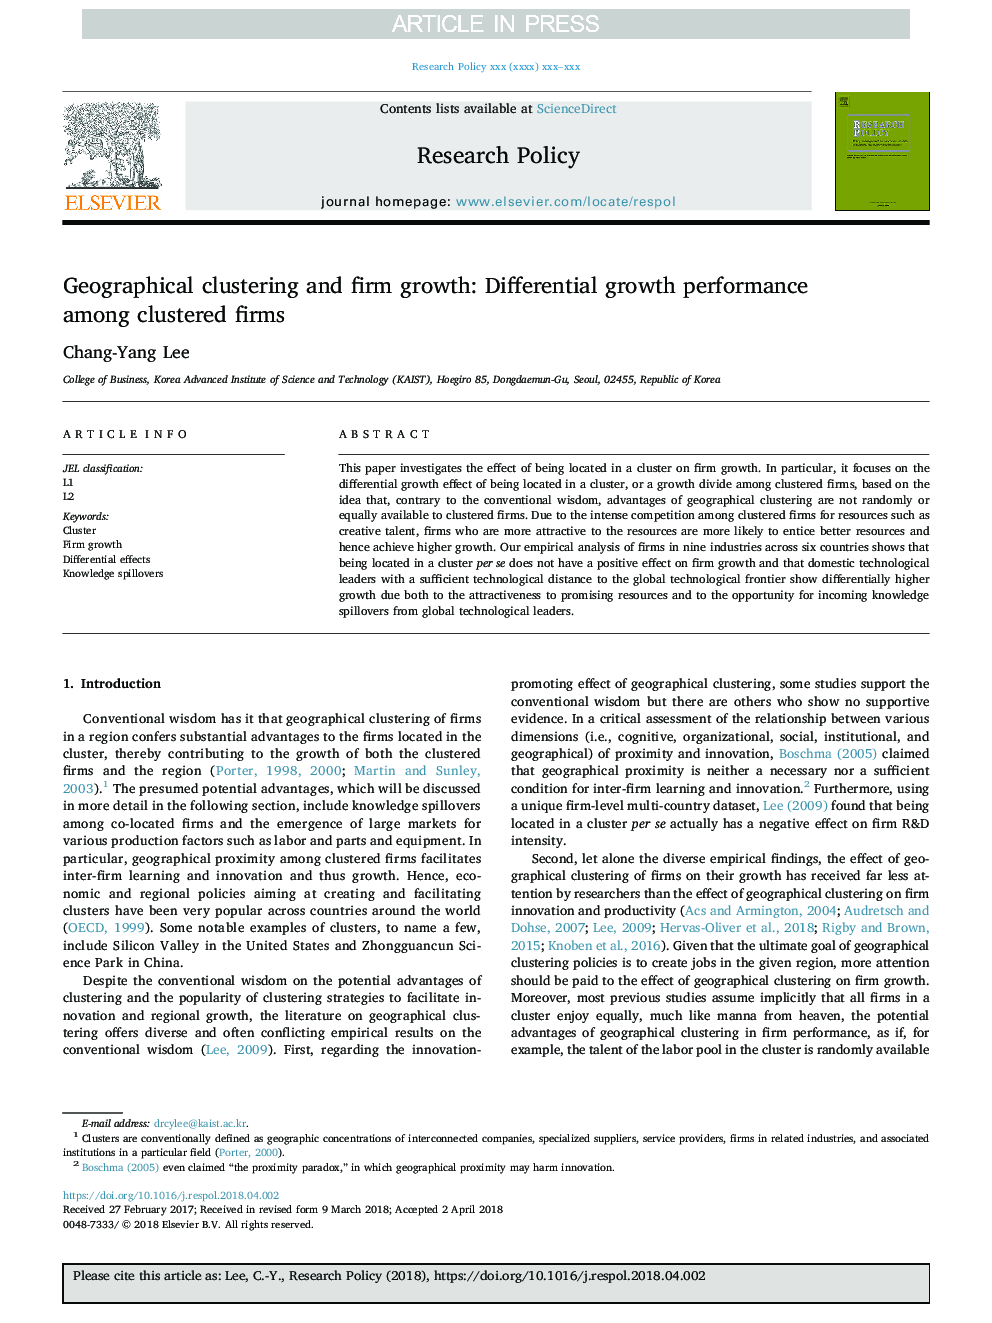 خوشه بندی جغرافیایی و رشد شرکت: عملکرد رشد دیفرانسیلی در میان شرکت های خوشه ای 